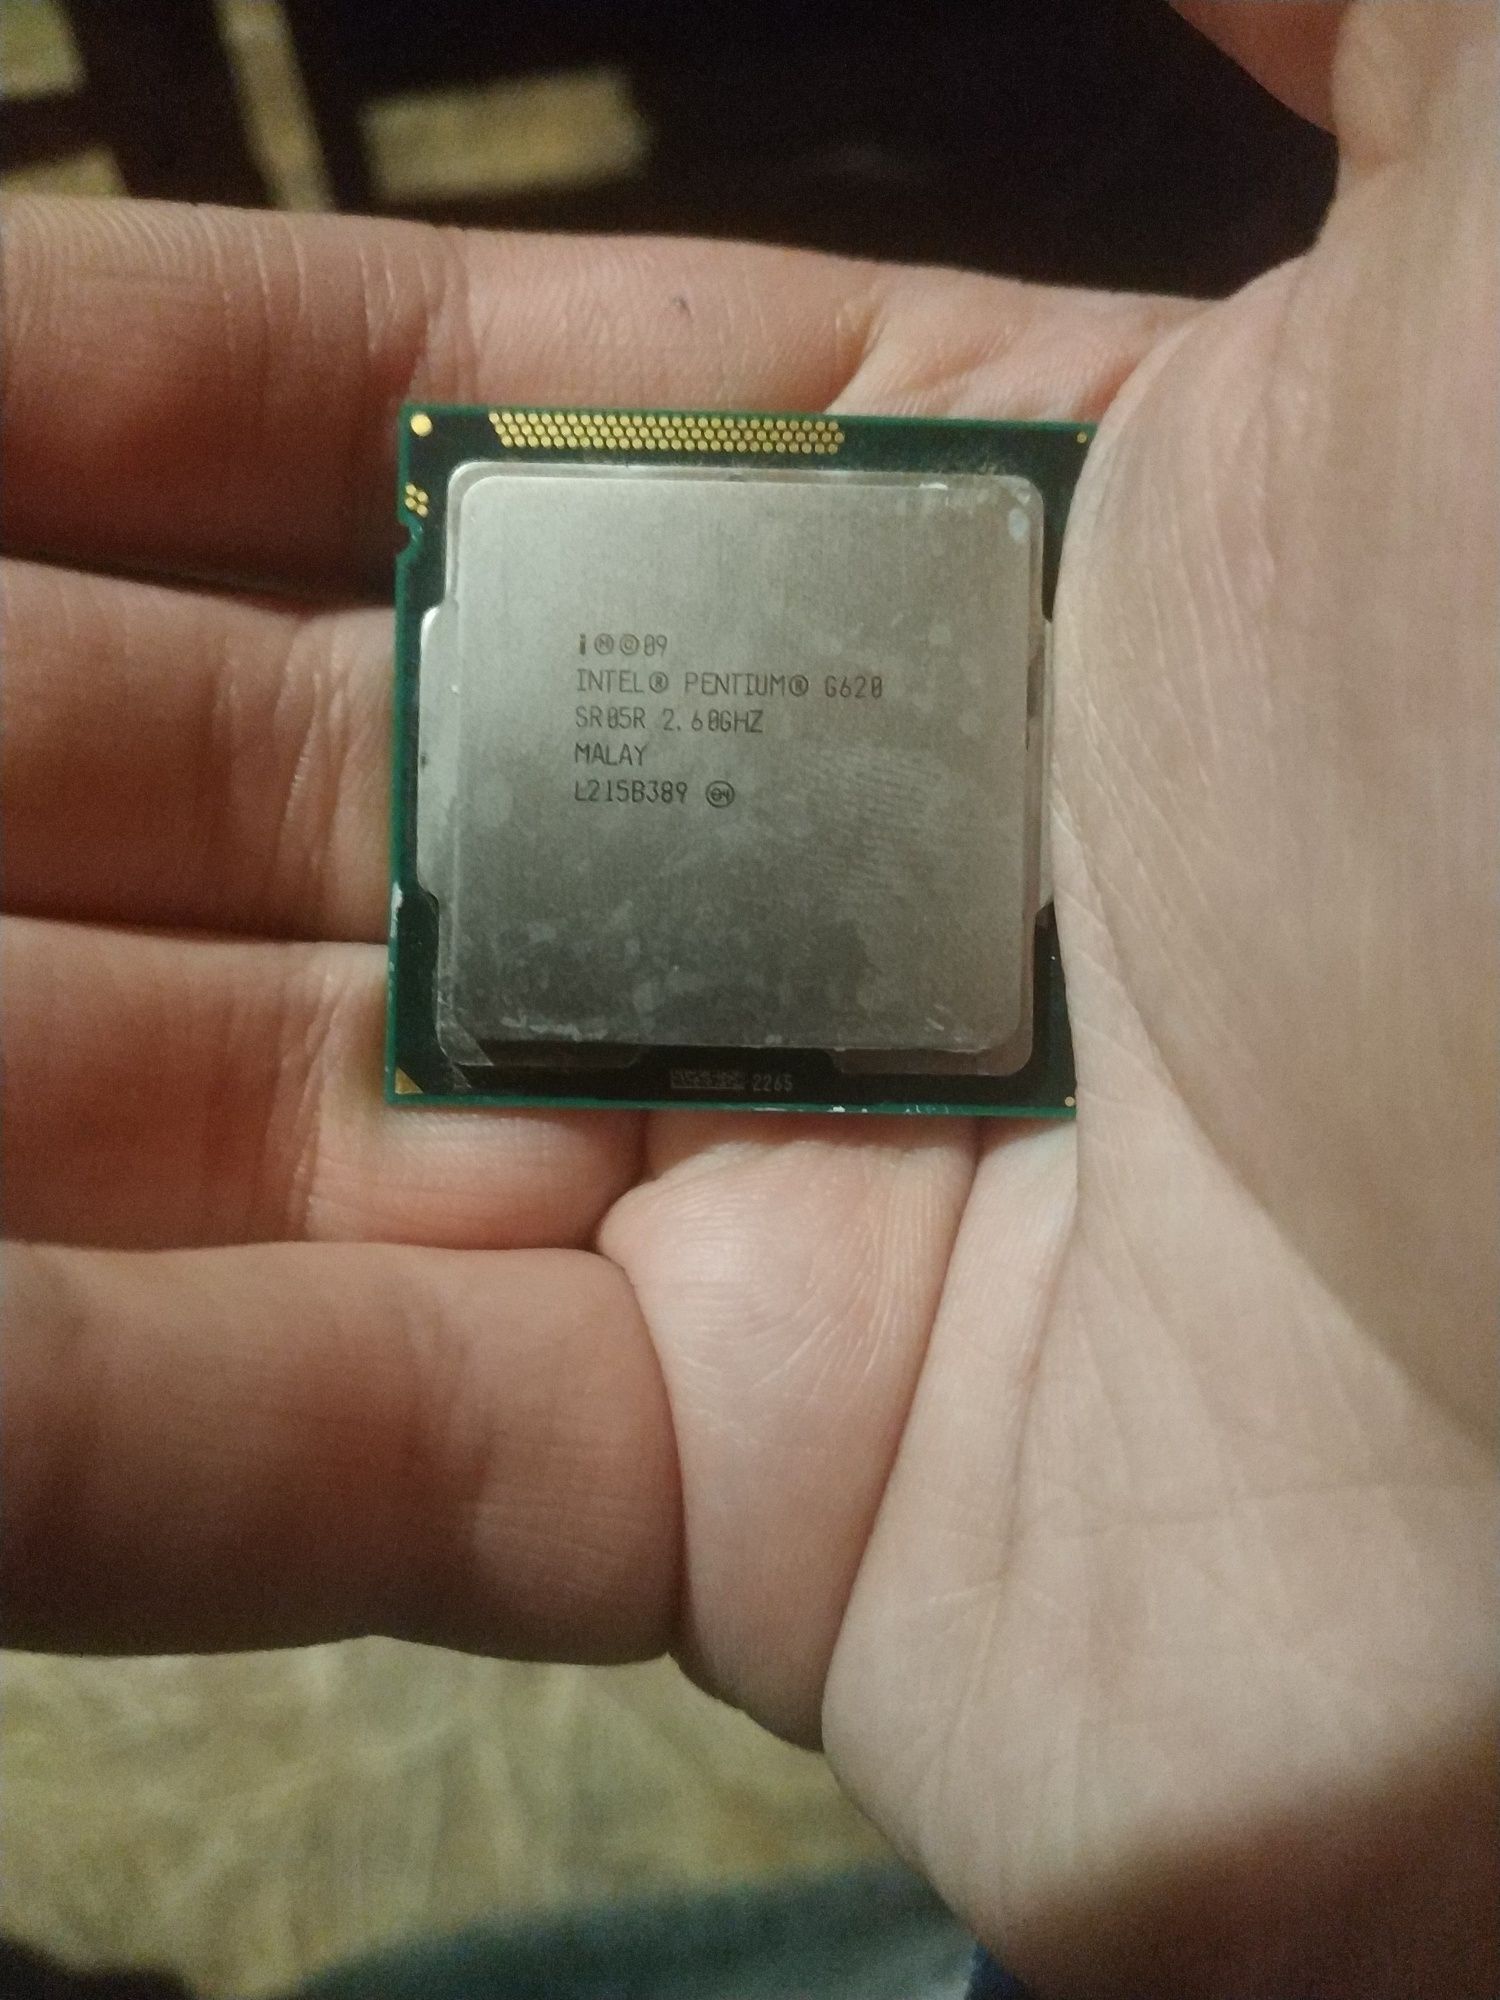 Intel pentium g620 2.6ghz